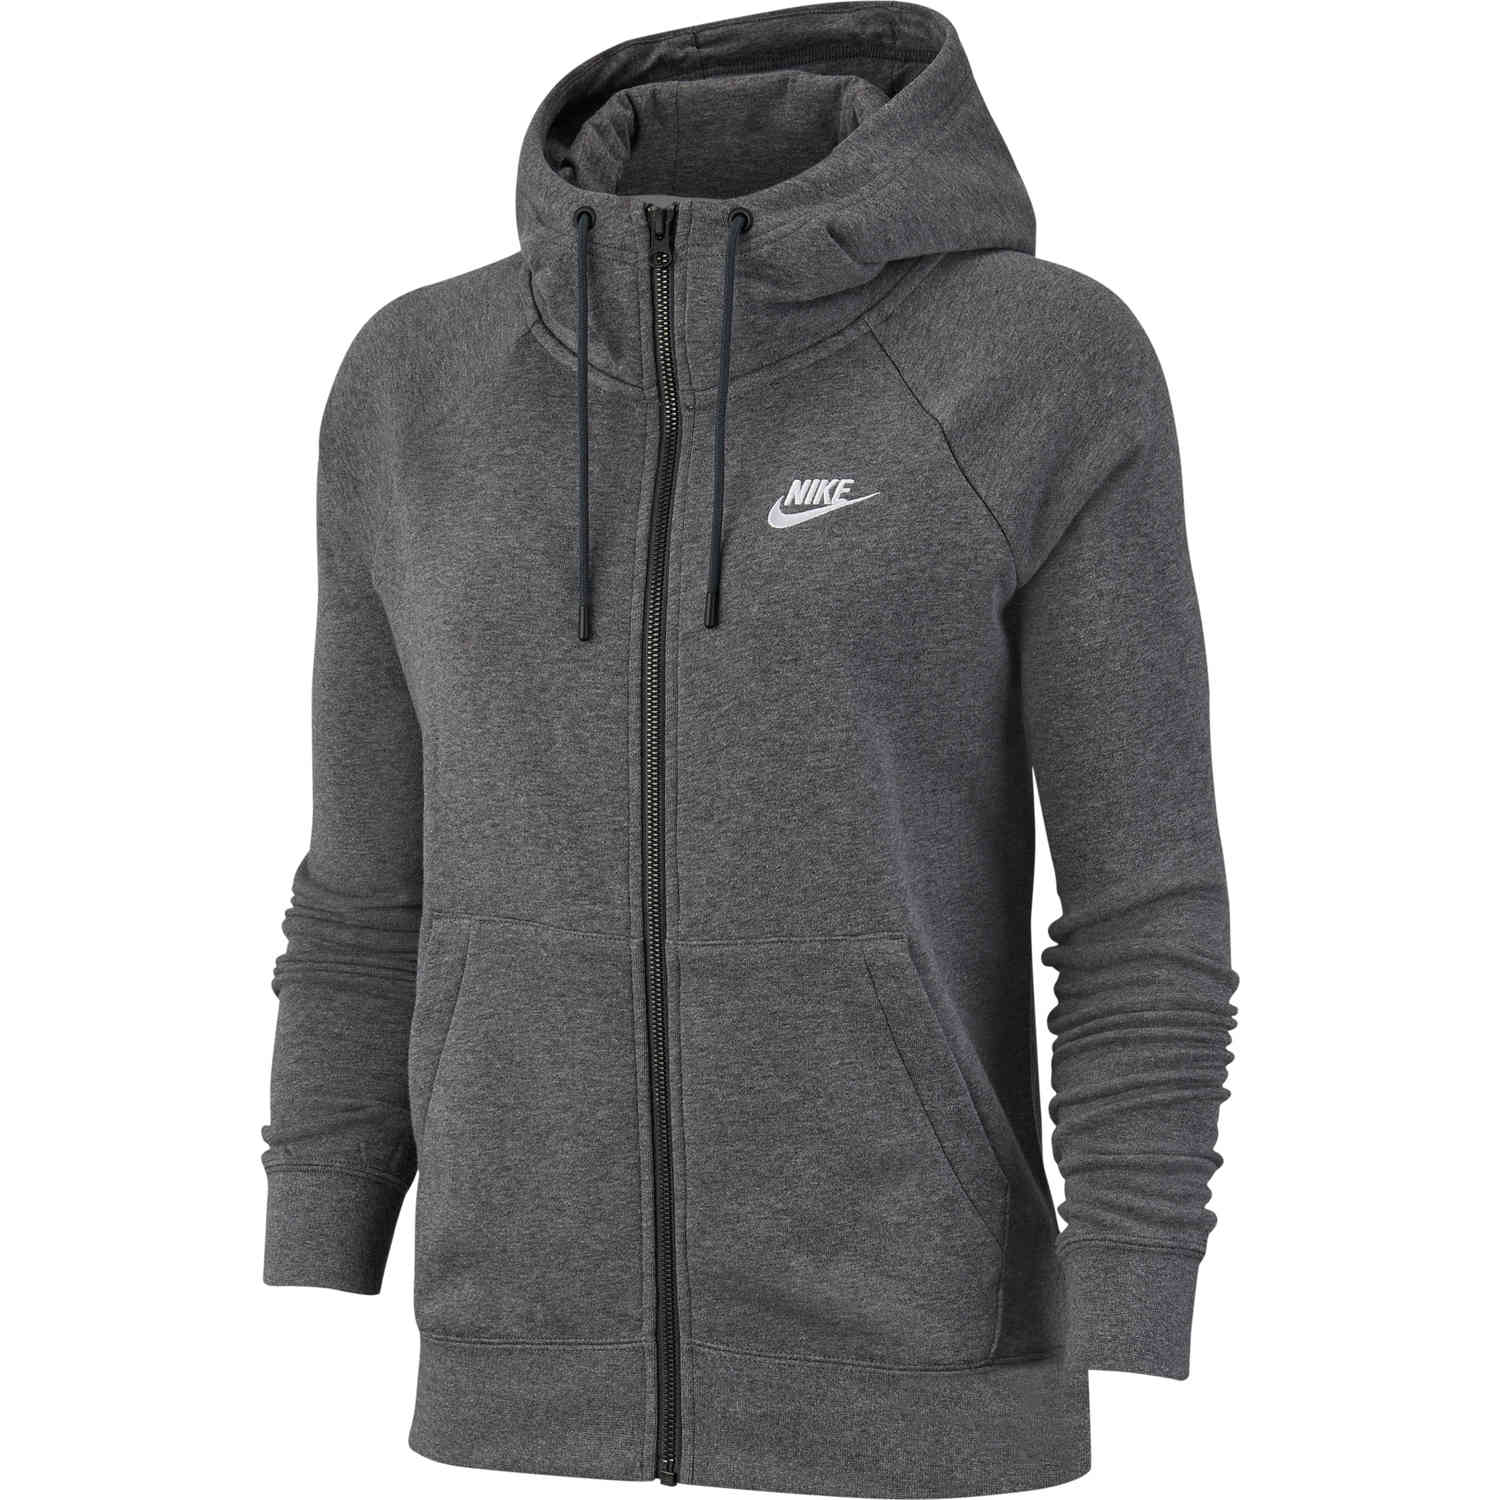 Kalmte beschaving plan Women's Nike Essential Fleece Full-zip Hoodie - Dark Grey Heather - Soccer  Master